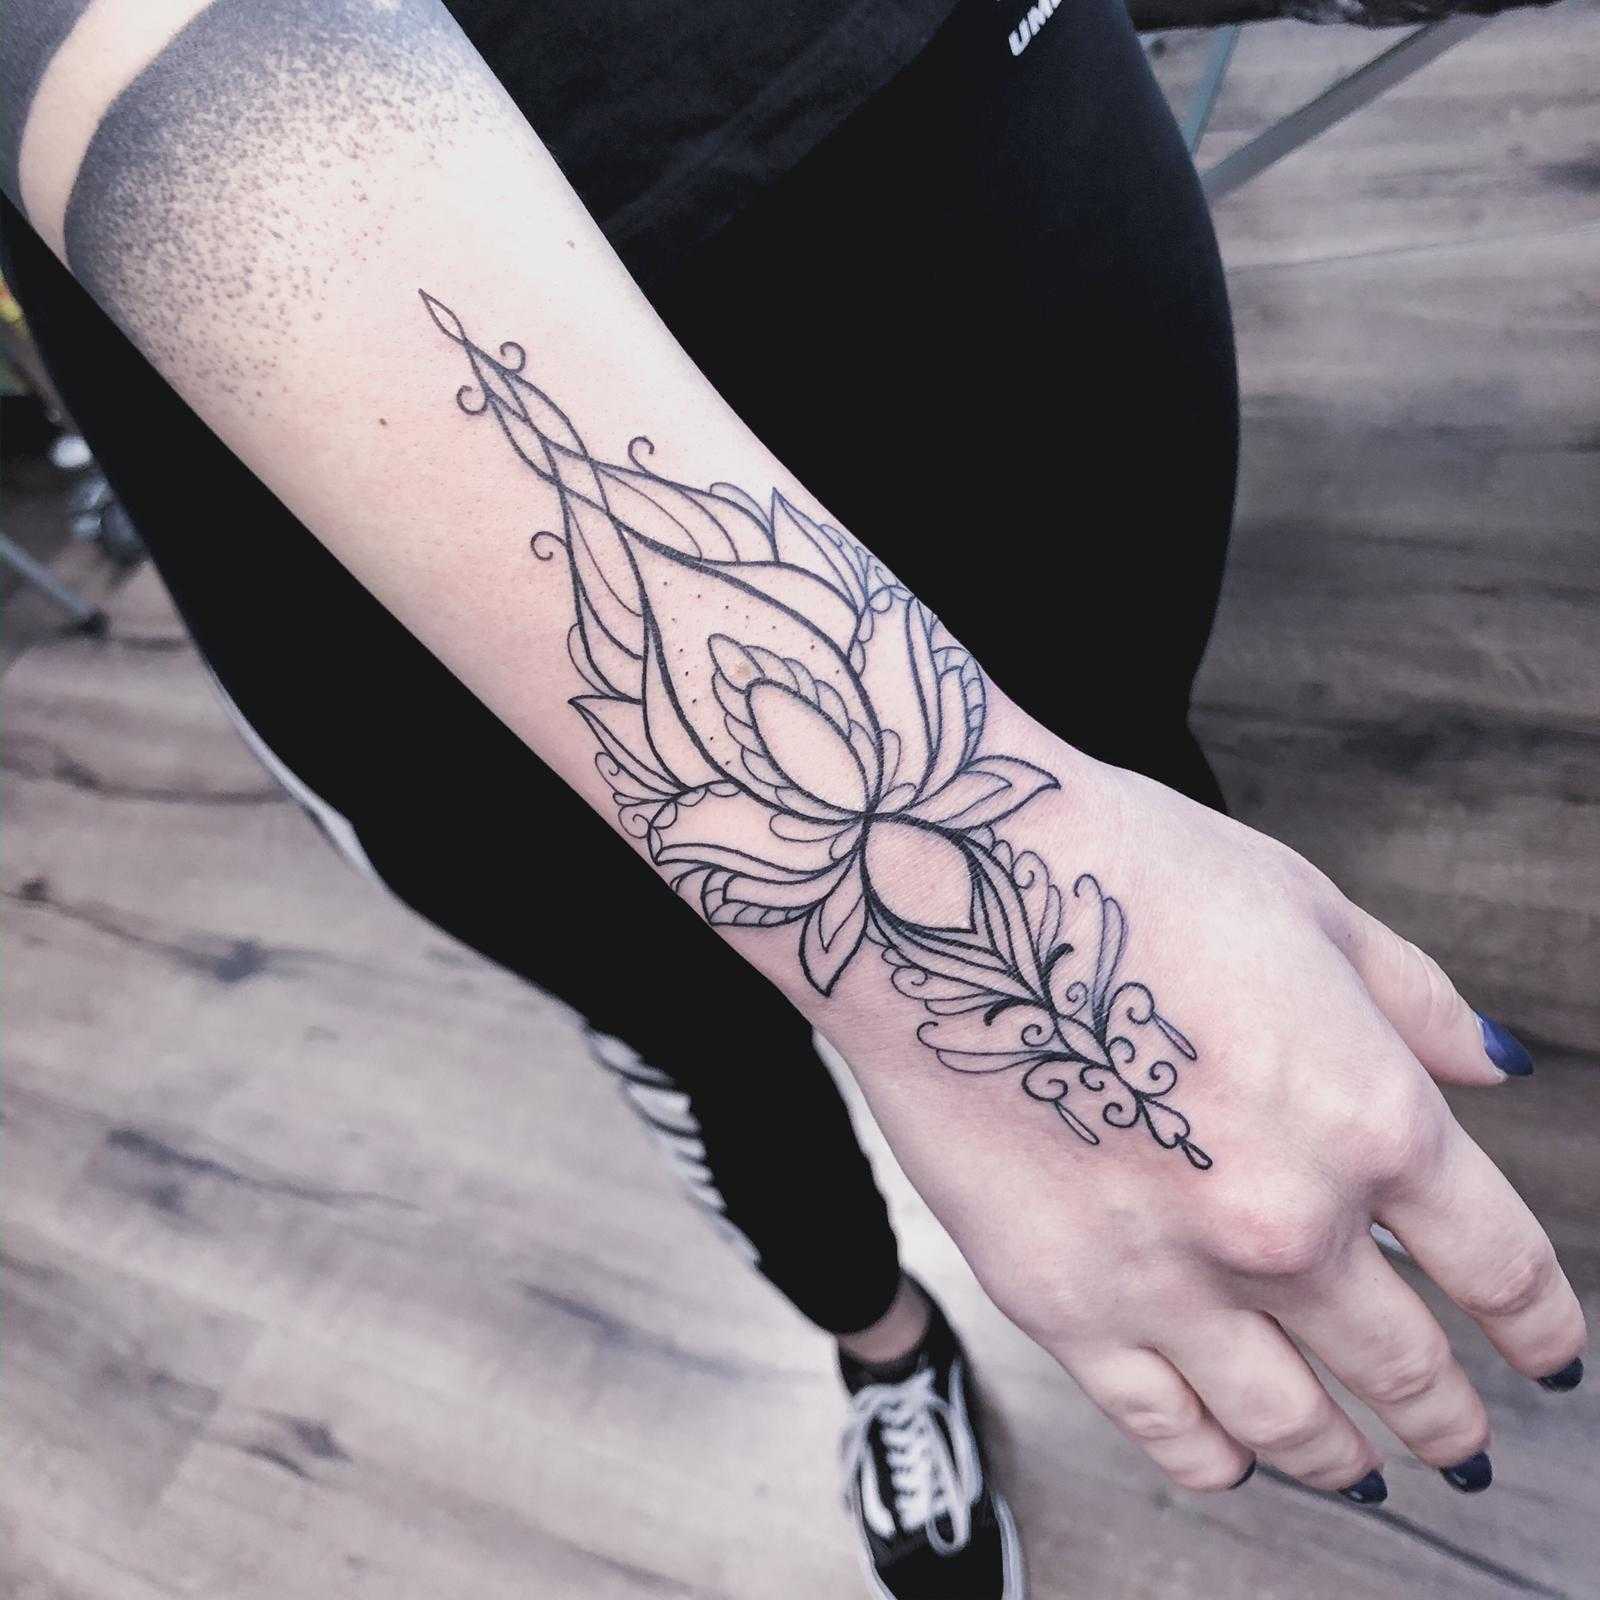 Florales Tattoo in Schwarz Weiß